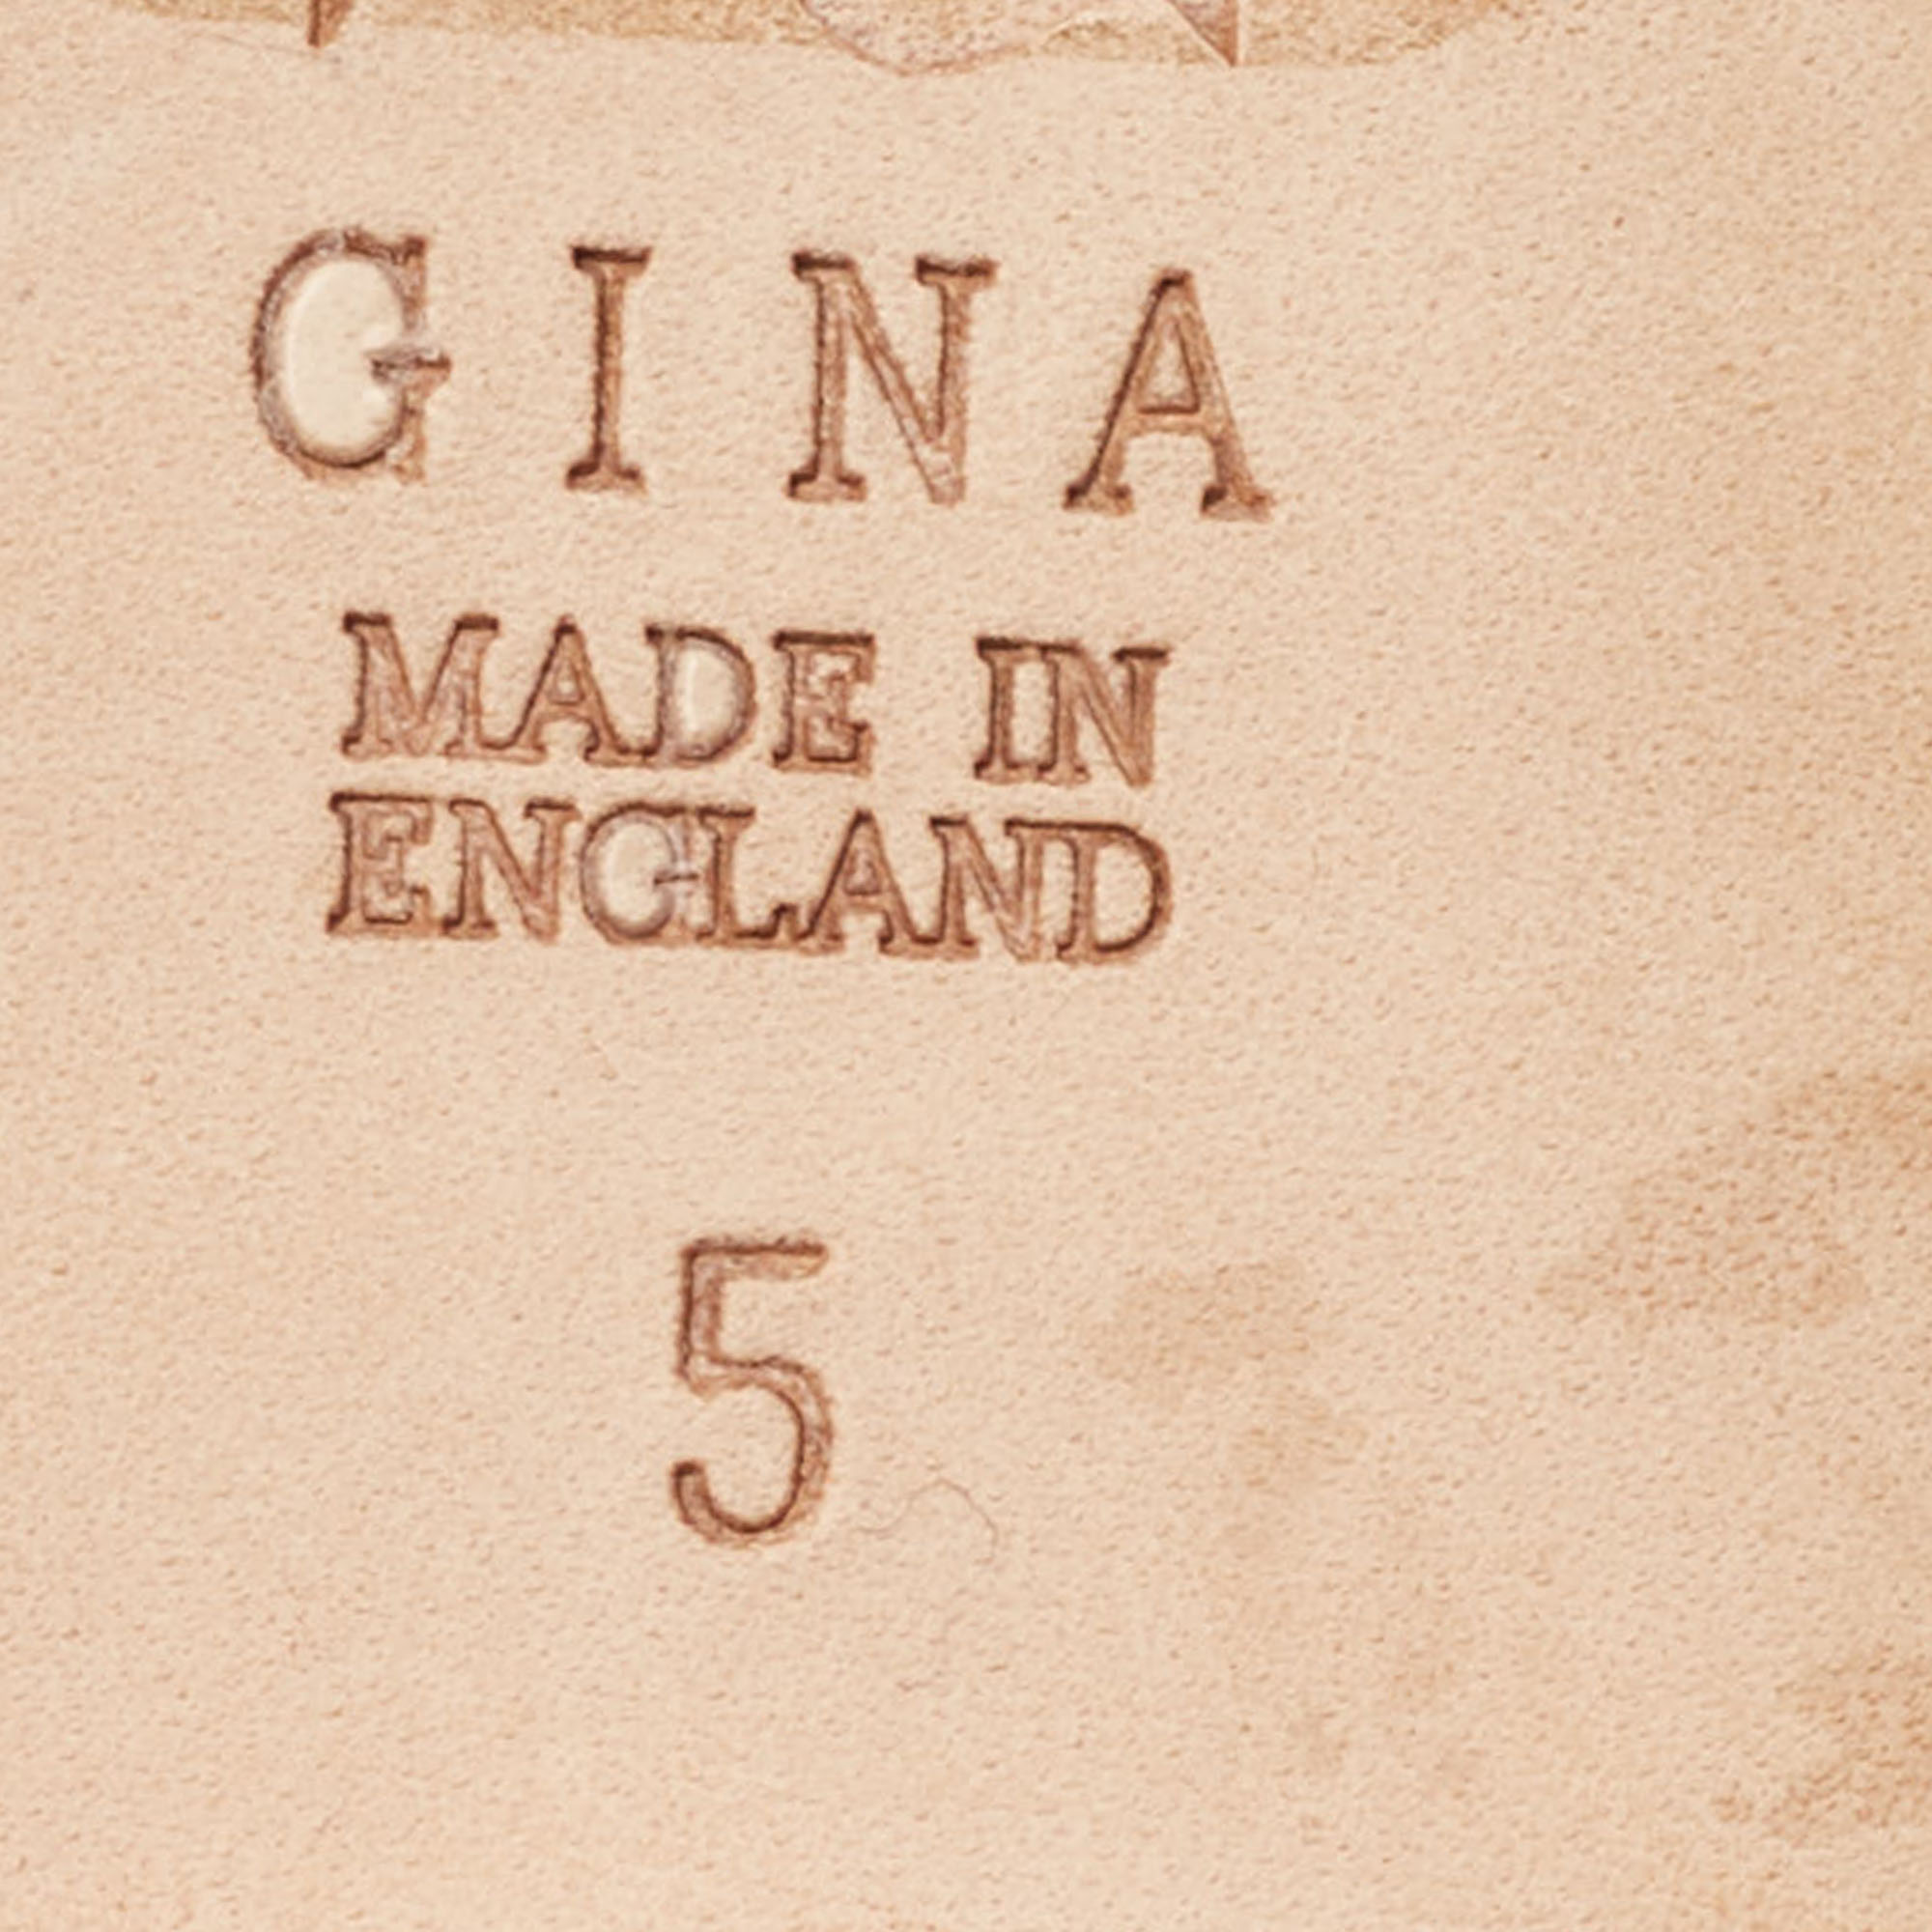 Gina Golden Leather Crystal Embellished Slide Sandals Size 38